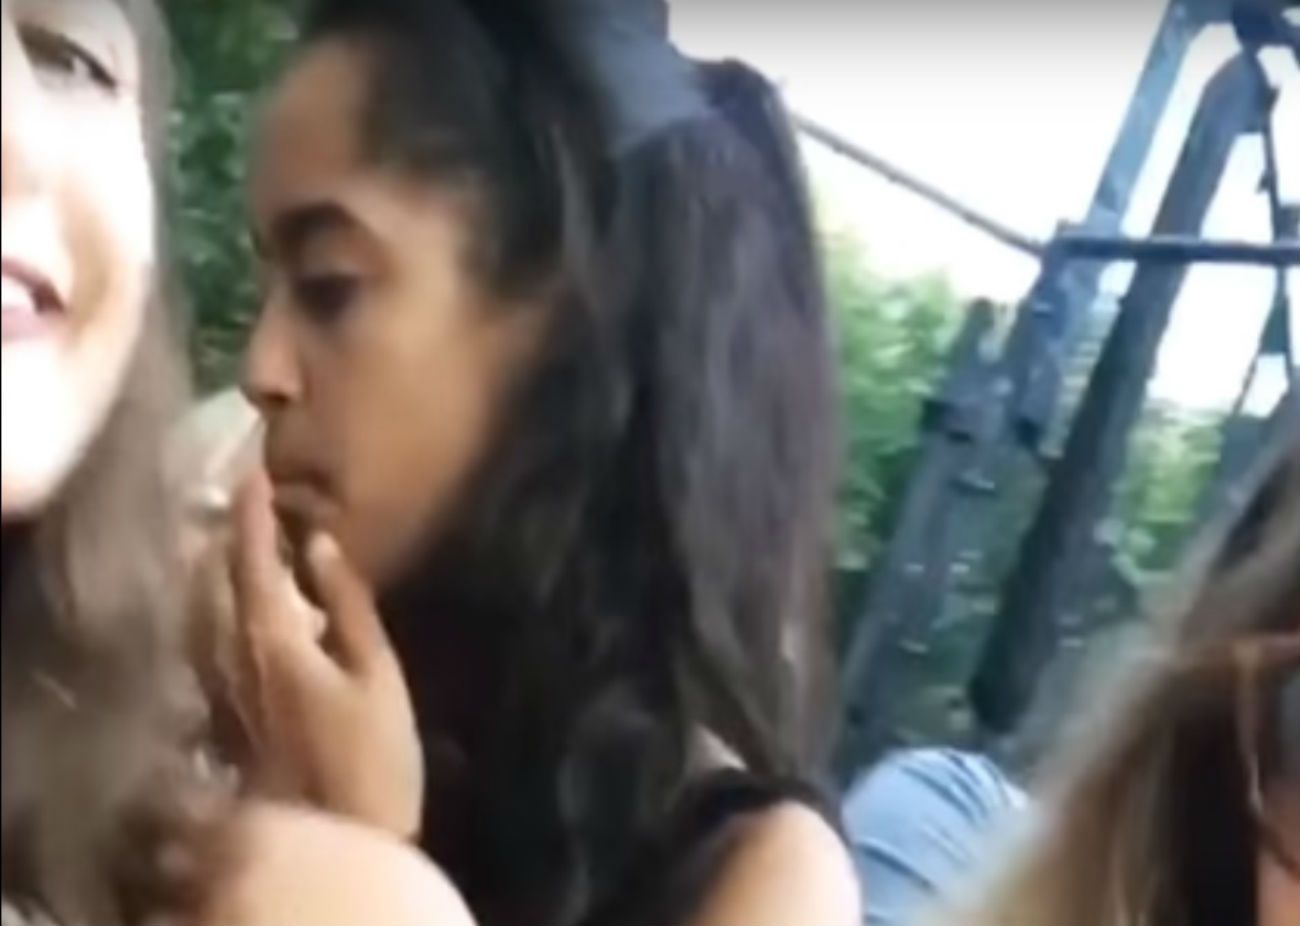 Polèmica per una imatge de la filla d'Obama fumant un suposat porro